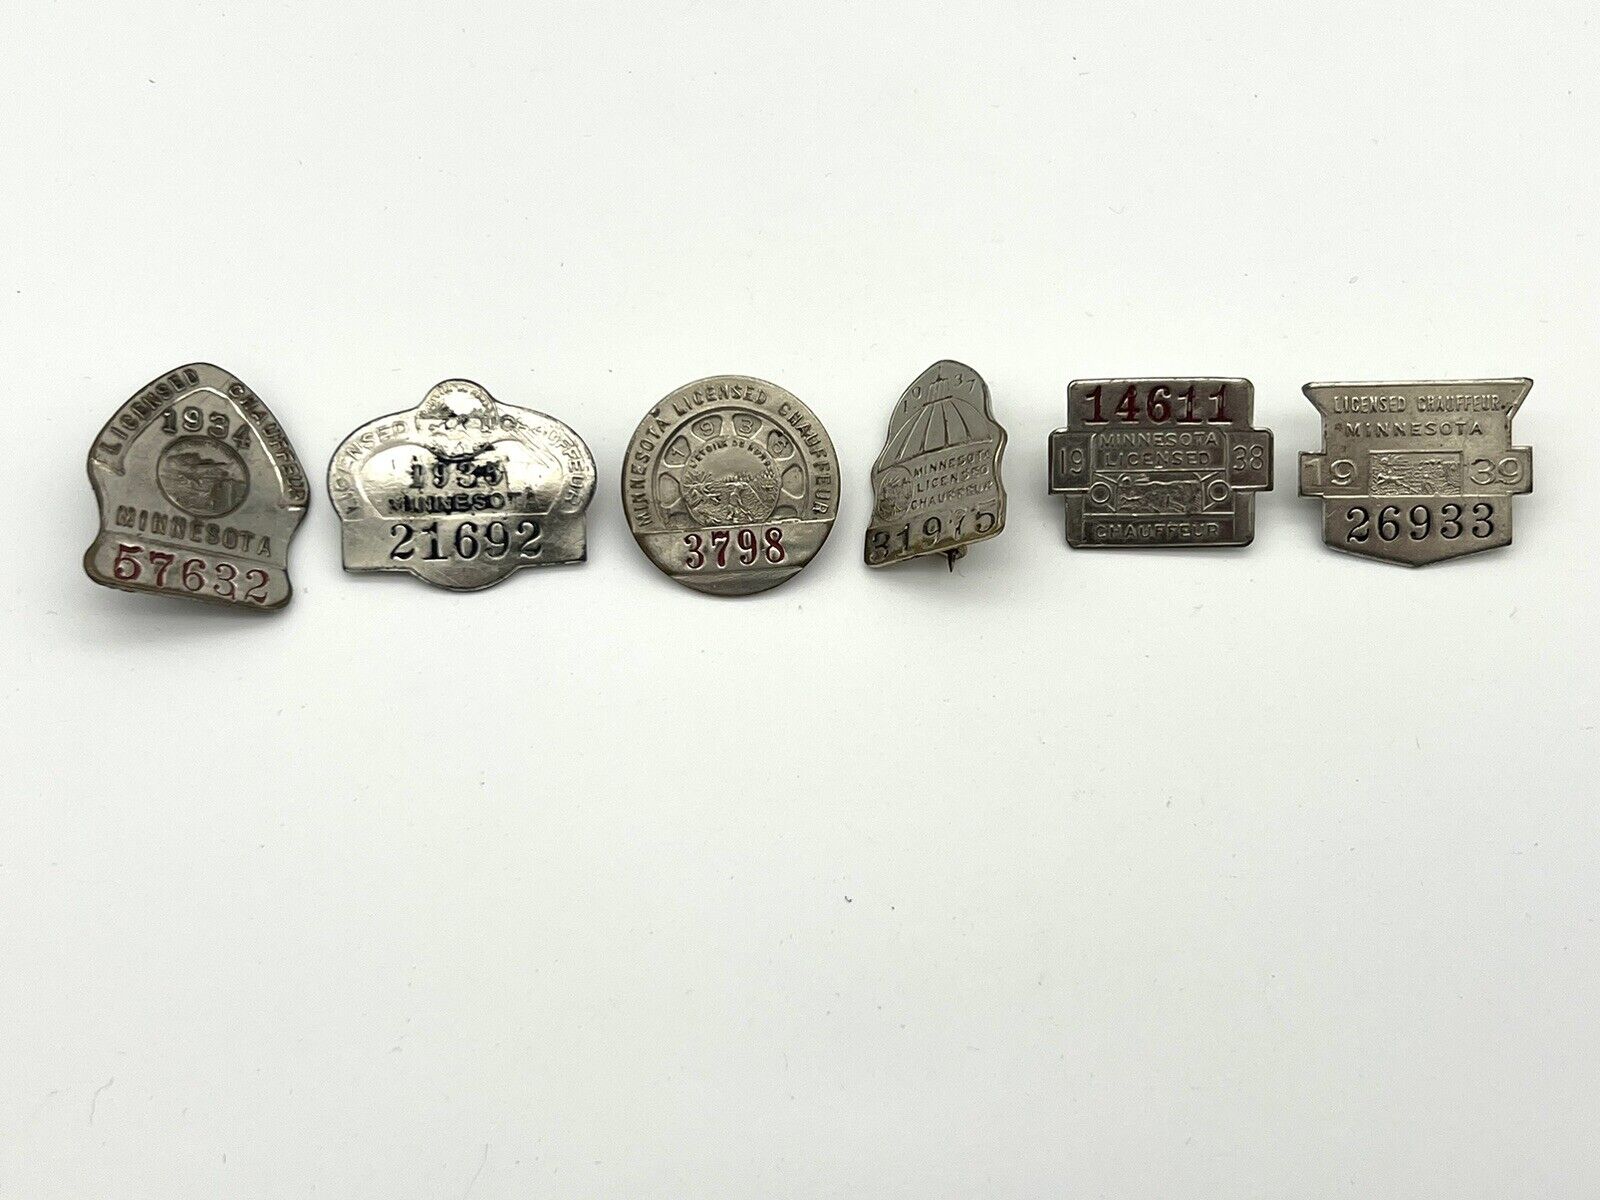 Vintage Minnesota Chauffer Metal Pins 1934-1939 Lot of 6